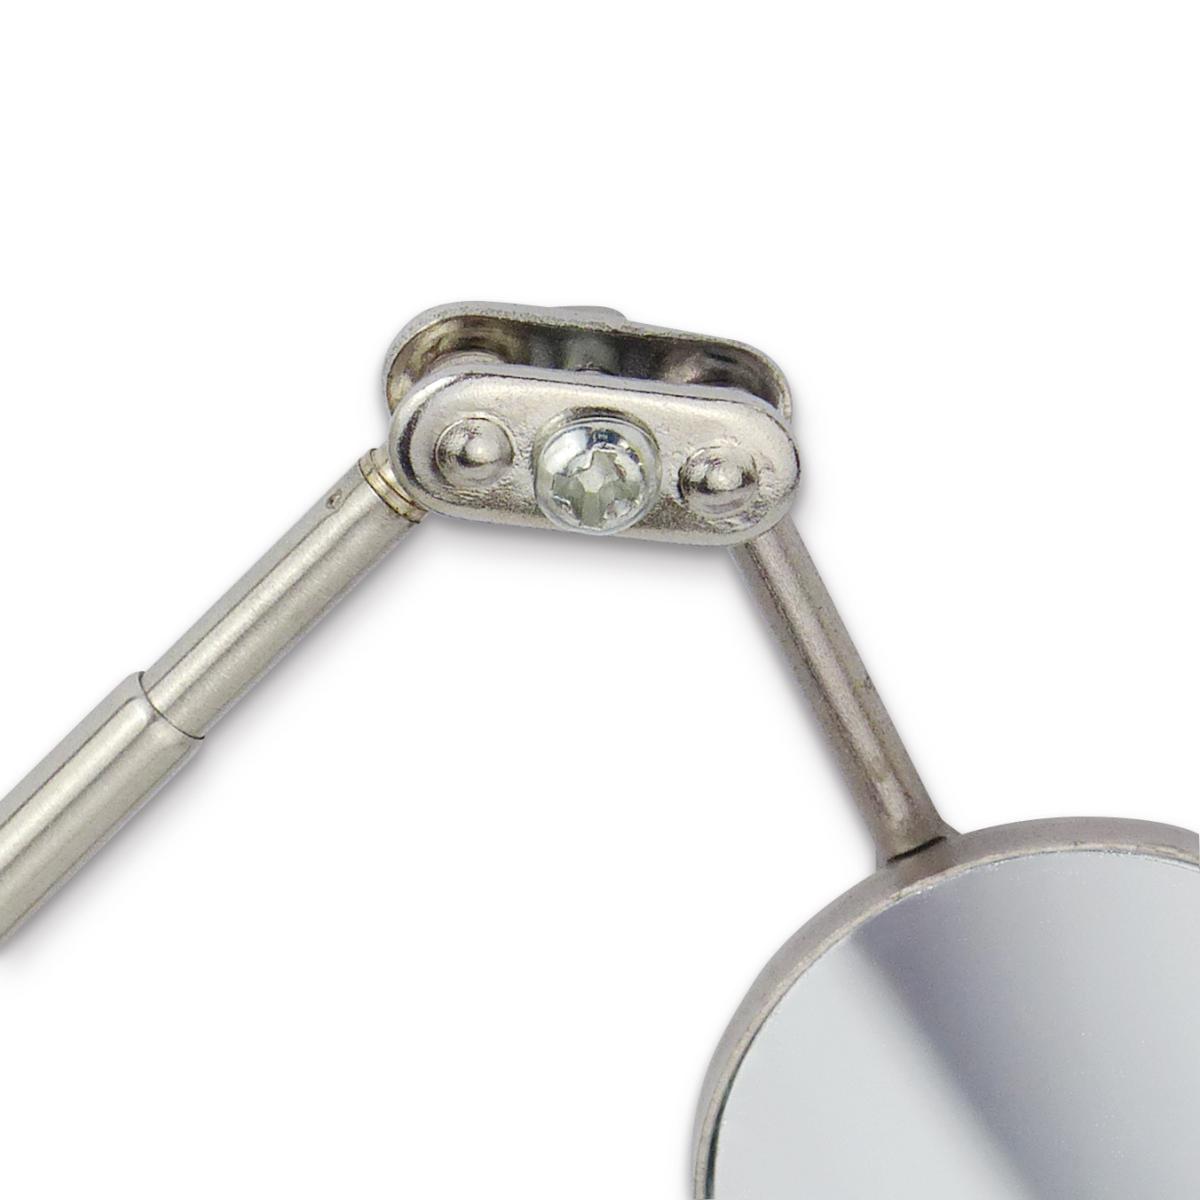 Tige métallique avec miroir, orientable par rotule l=175 mm, 490 mm ouvert.